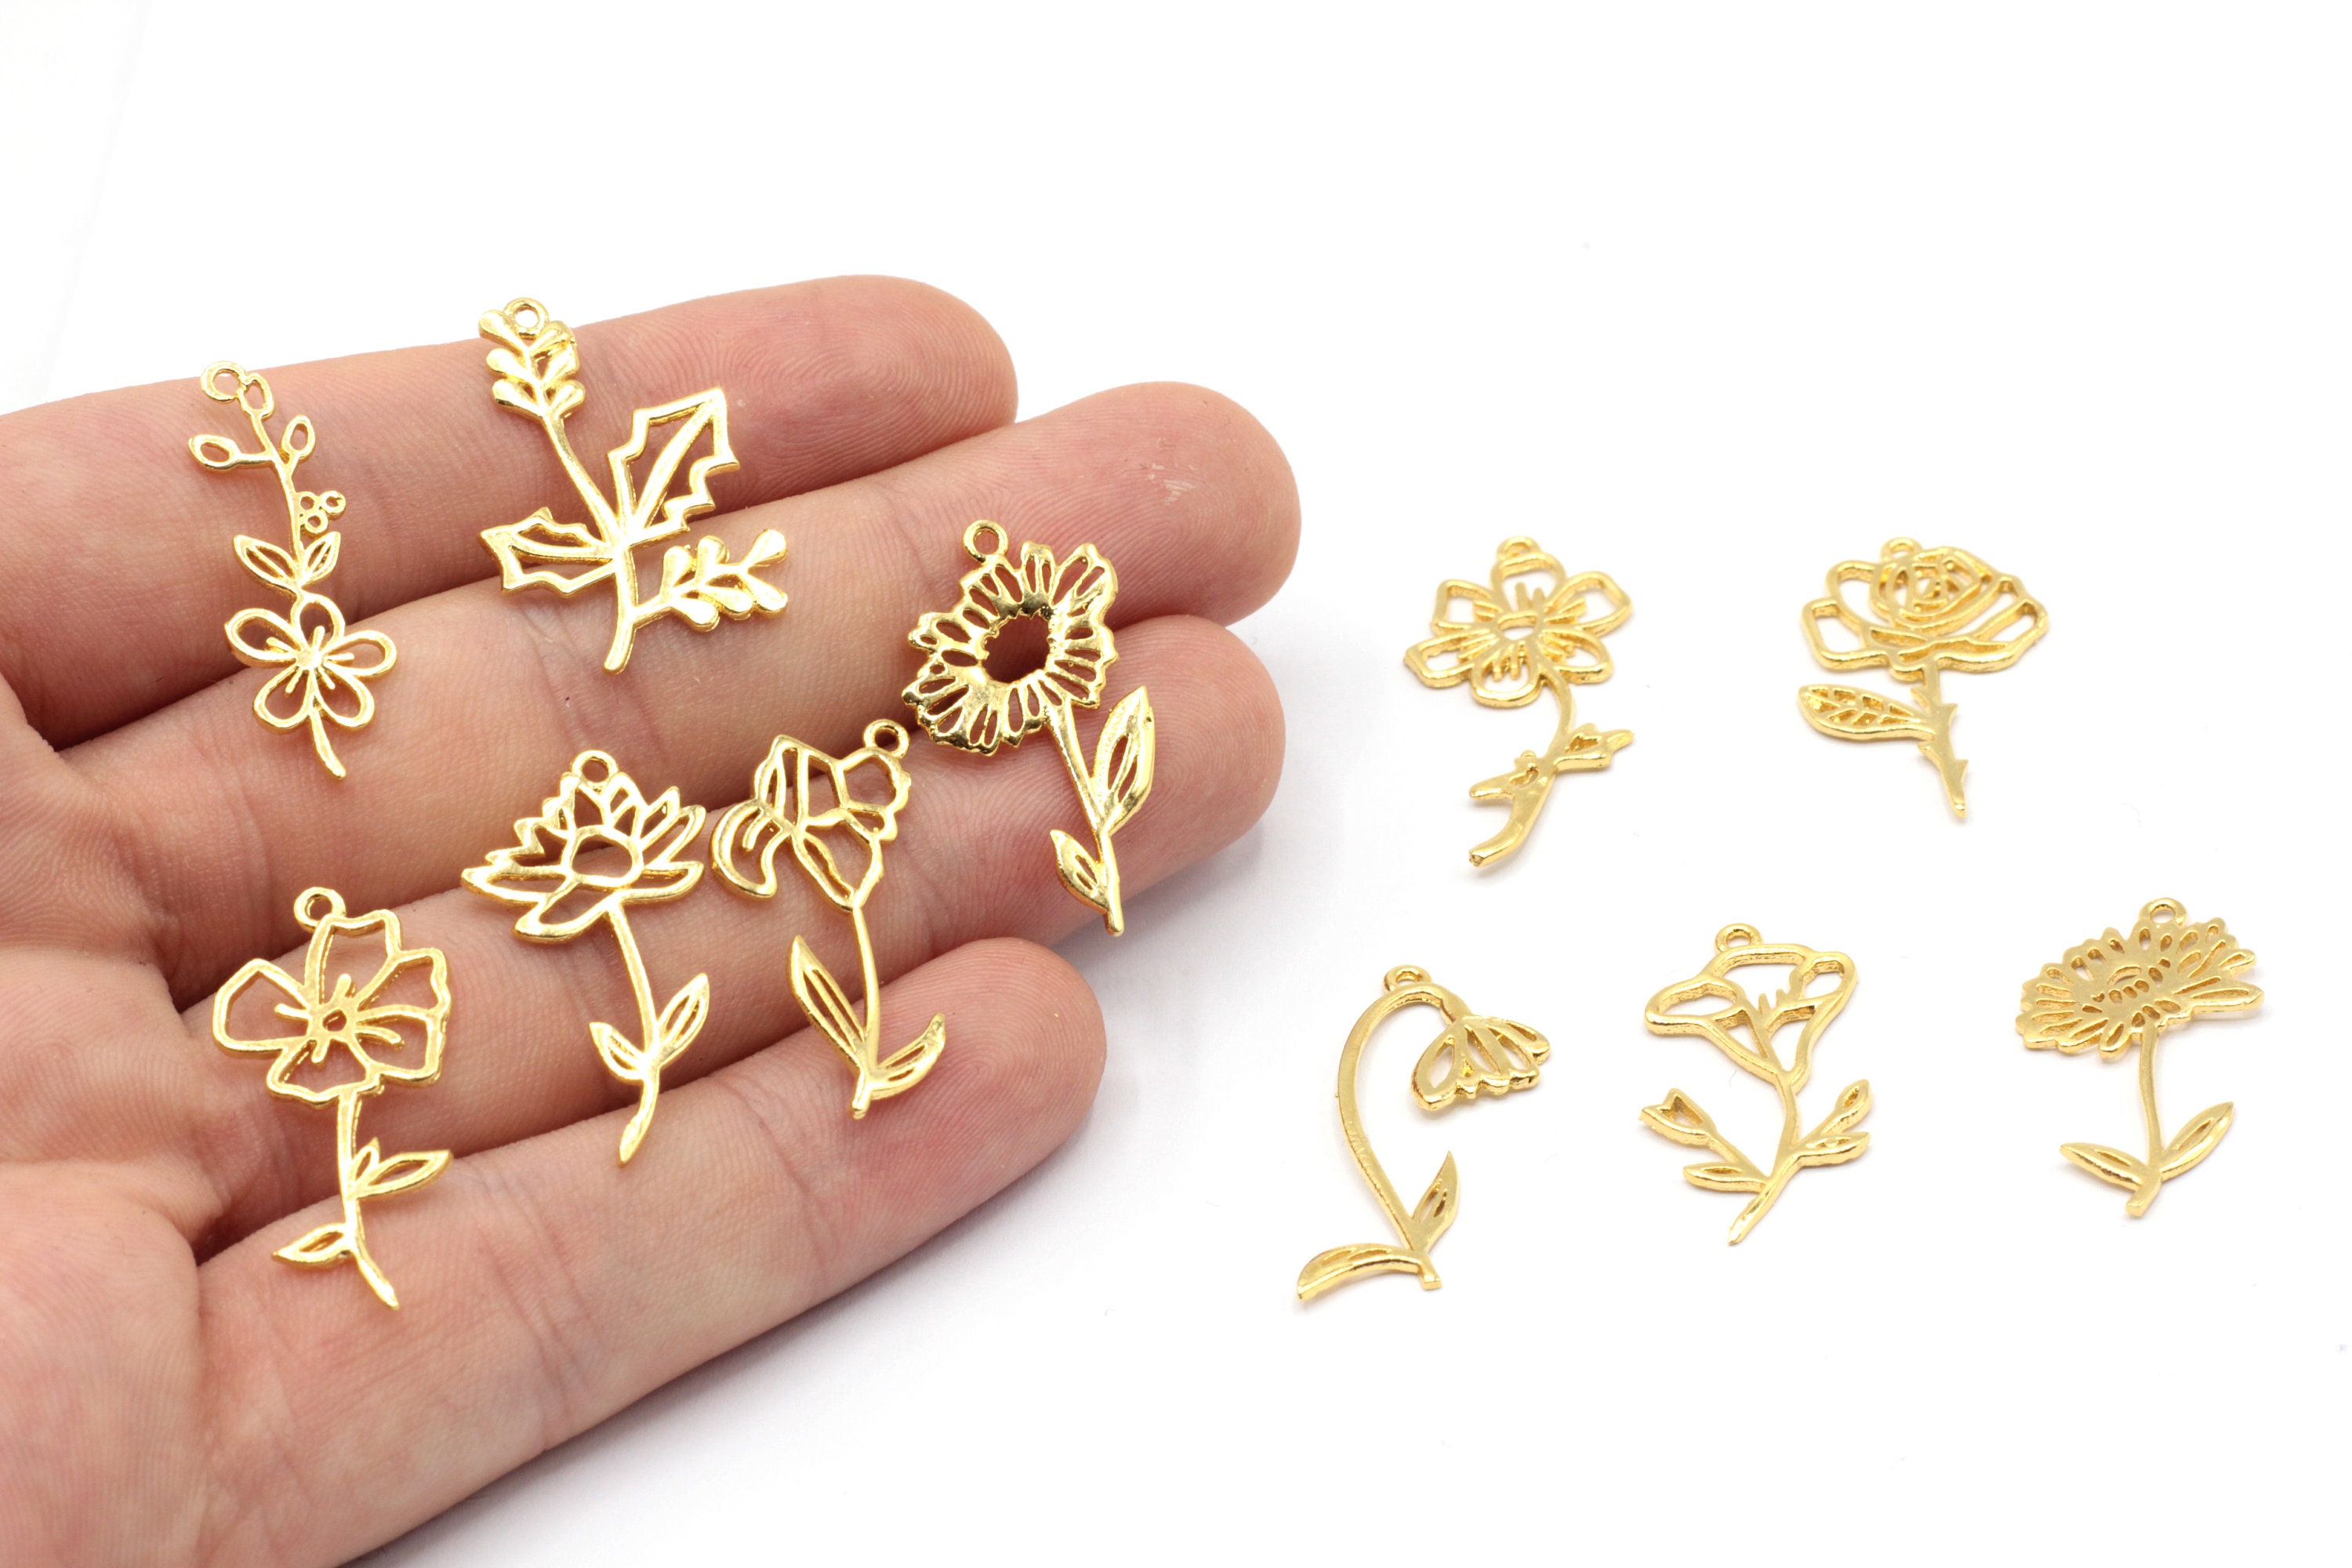 WYSIWYG 40pcs 11x11mm Small Flower Charms Cute Flower Charms For Jewelry  Making Flower Charms